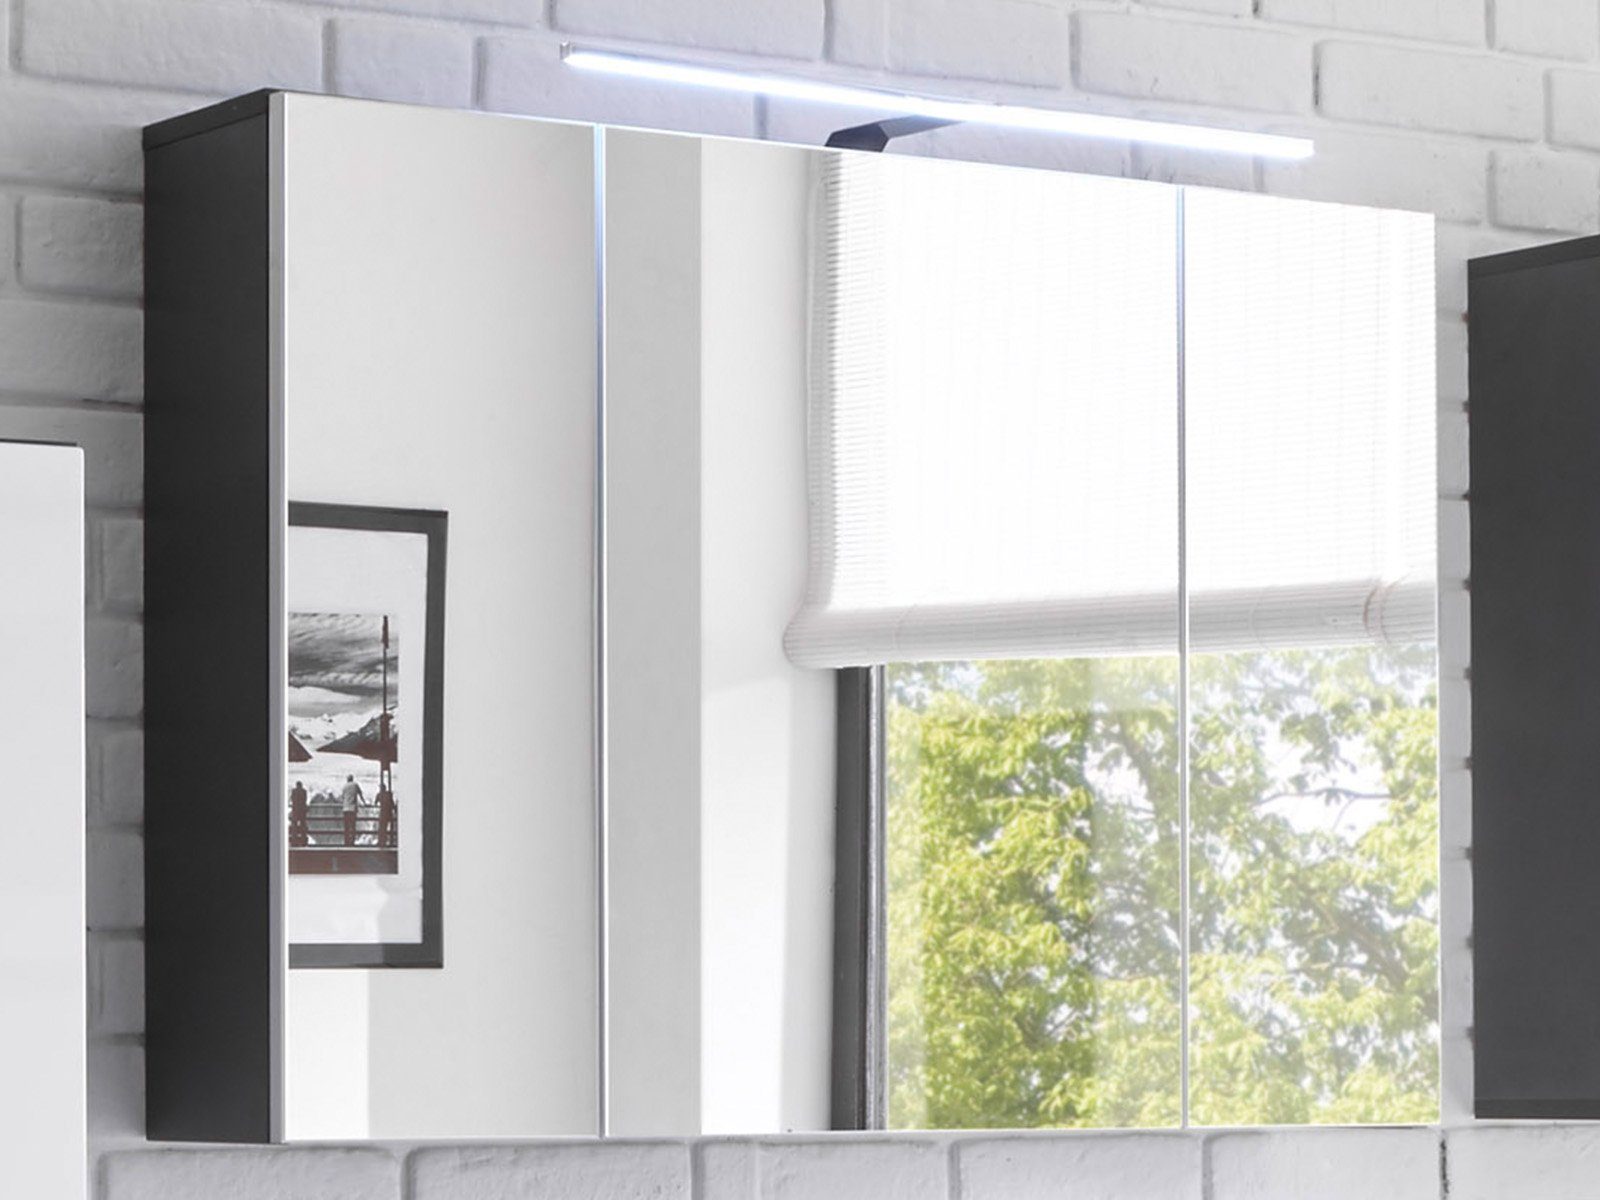 möbelando Spiegelschrank Brooklyn Moderner Spiegelschrank, Korpus aus Spanplatte in Grau, Front aus Spiegelglas, mit 3 Türen, 3 Einlegeböden inkl. LED-Aufsatzleuchte. Breite 99 cm, Höhe 70 cm, Tiefe 21 cm.